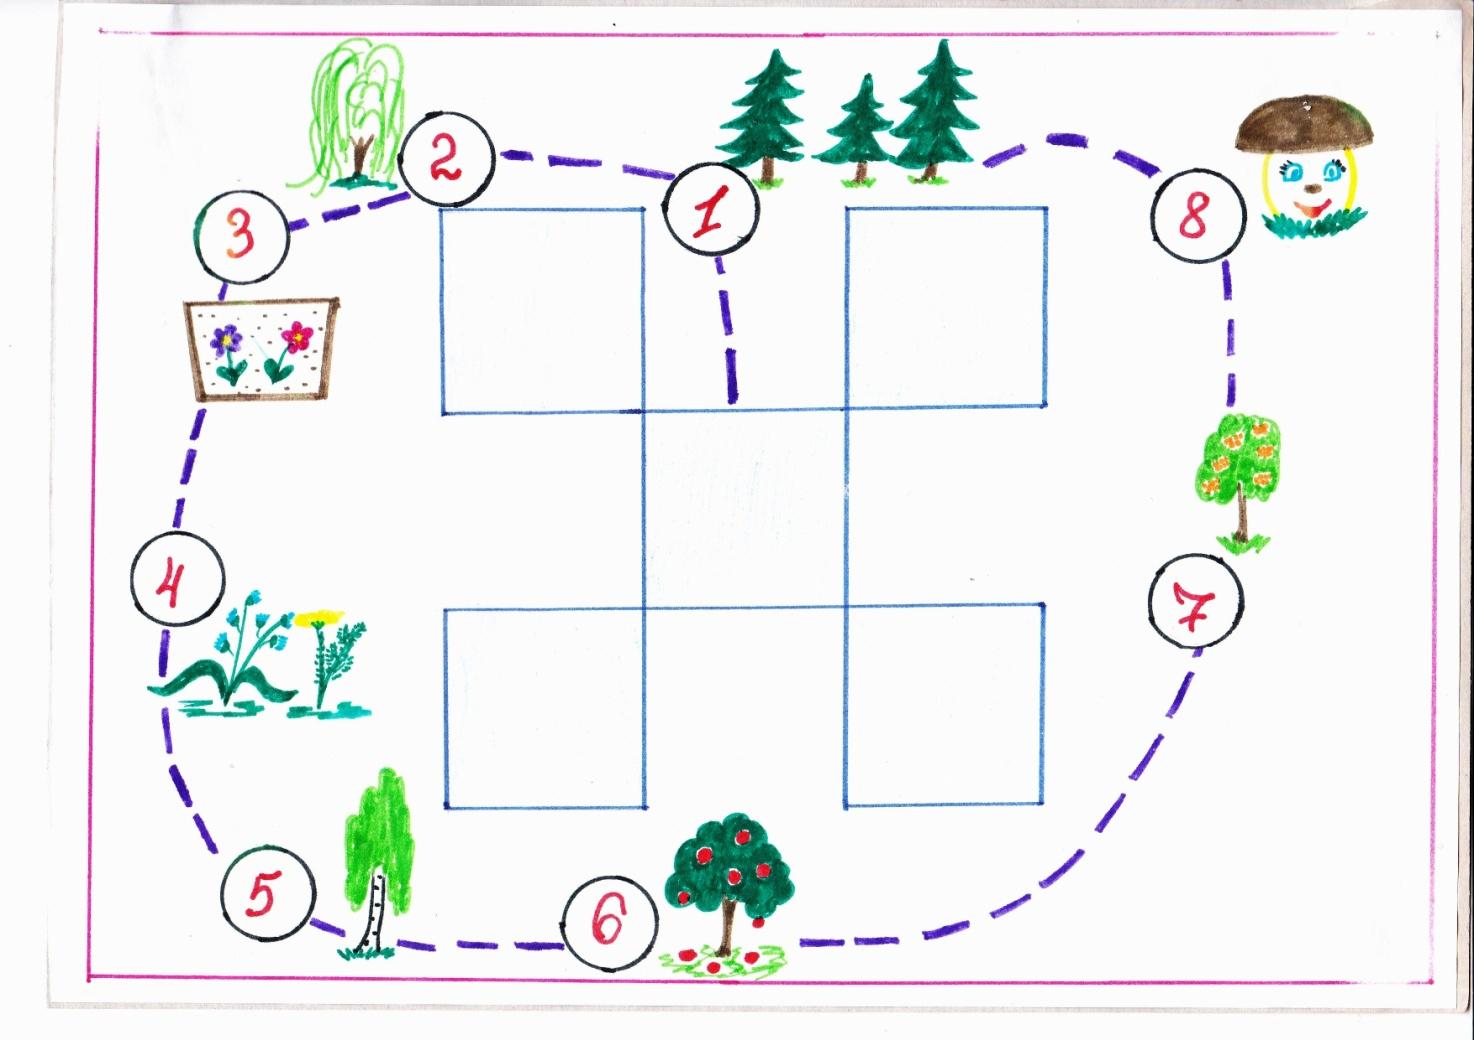 Тех карта игры в старшей группе. План схема экологической тропы в ДОУ. Карта экологической тропы в ДОУ. Маршрутная карта экологической тропы. Схема экологической тропы в детском саду рисунок.